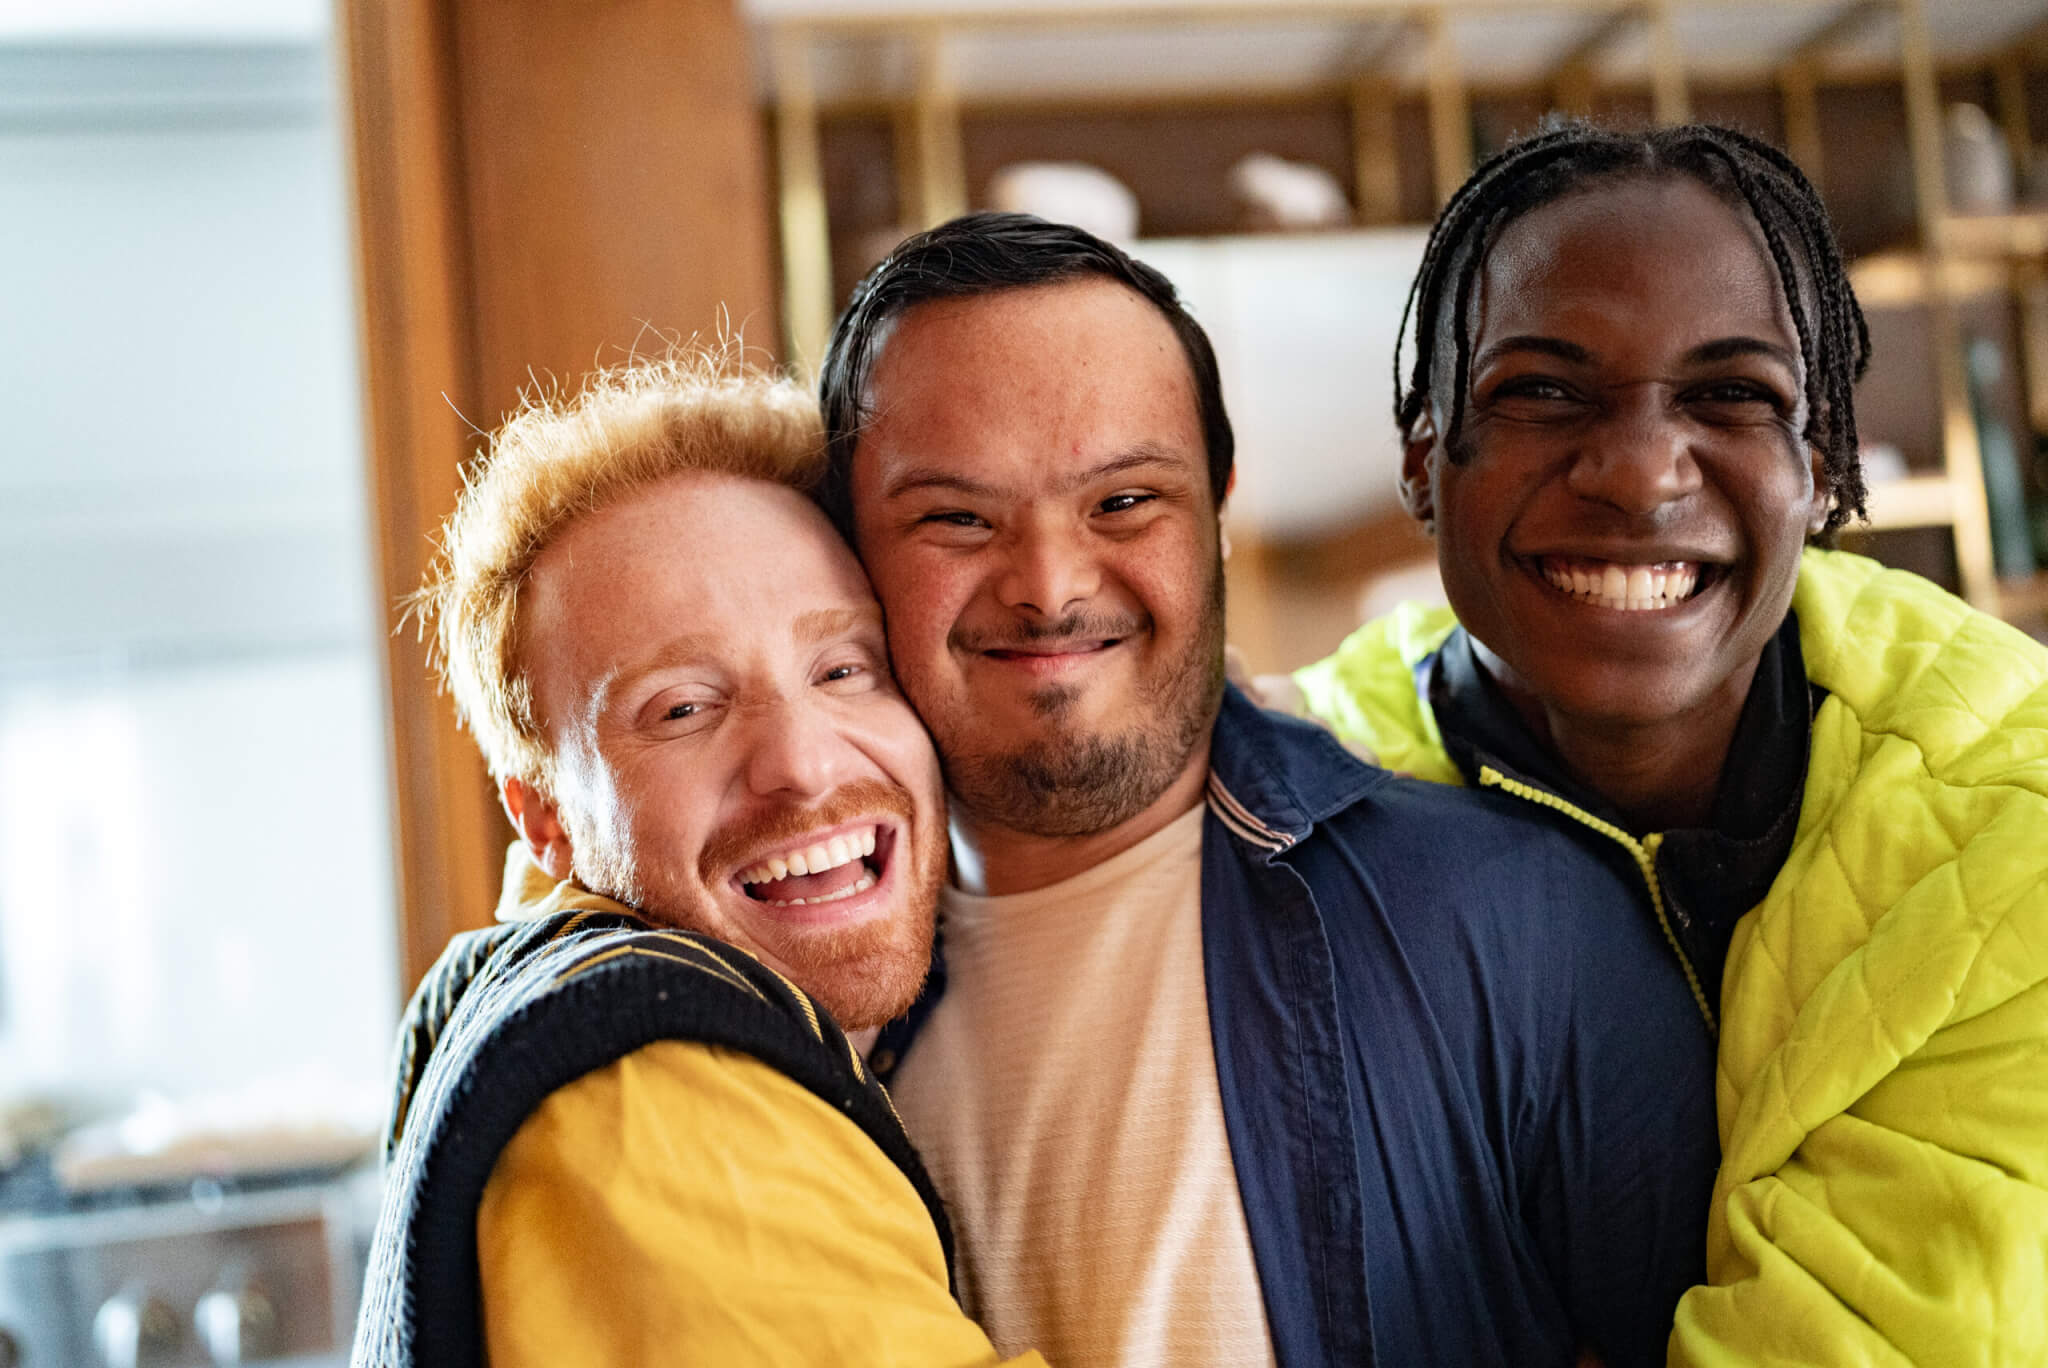 drei junge Männer umarmen sich. Sie haben unterschiedliche Hautfarben, manche haben Behinderungen.